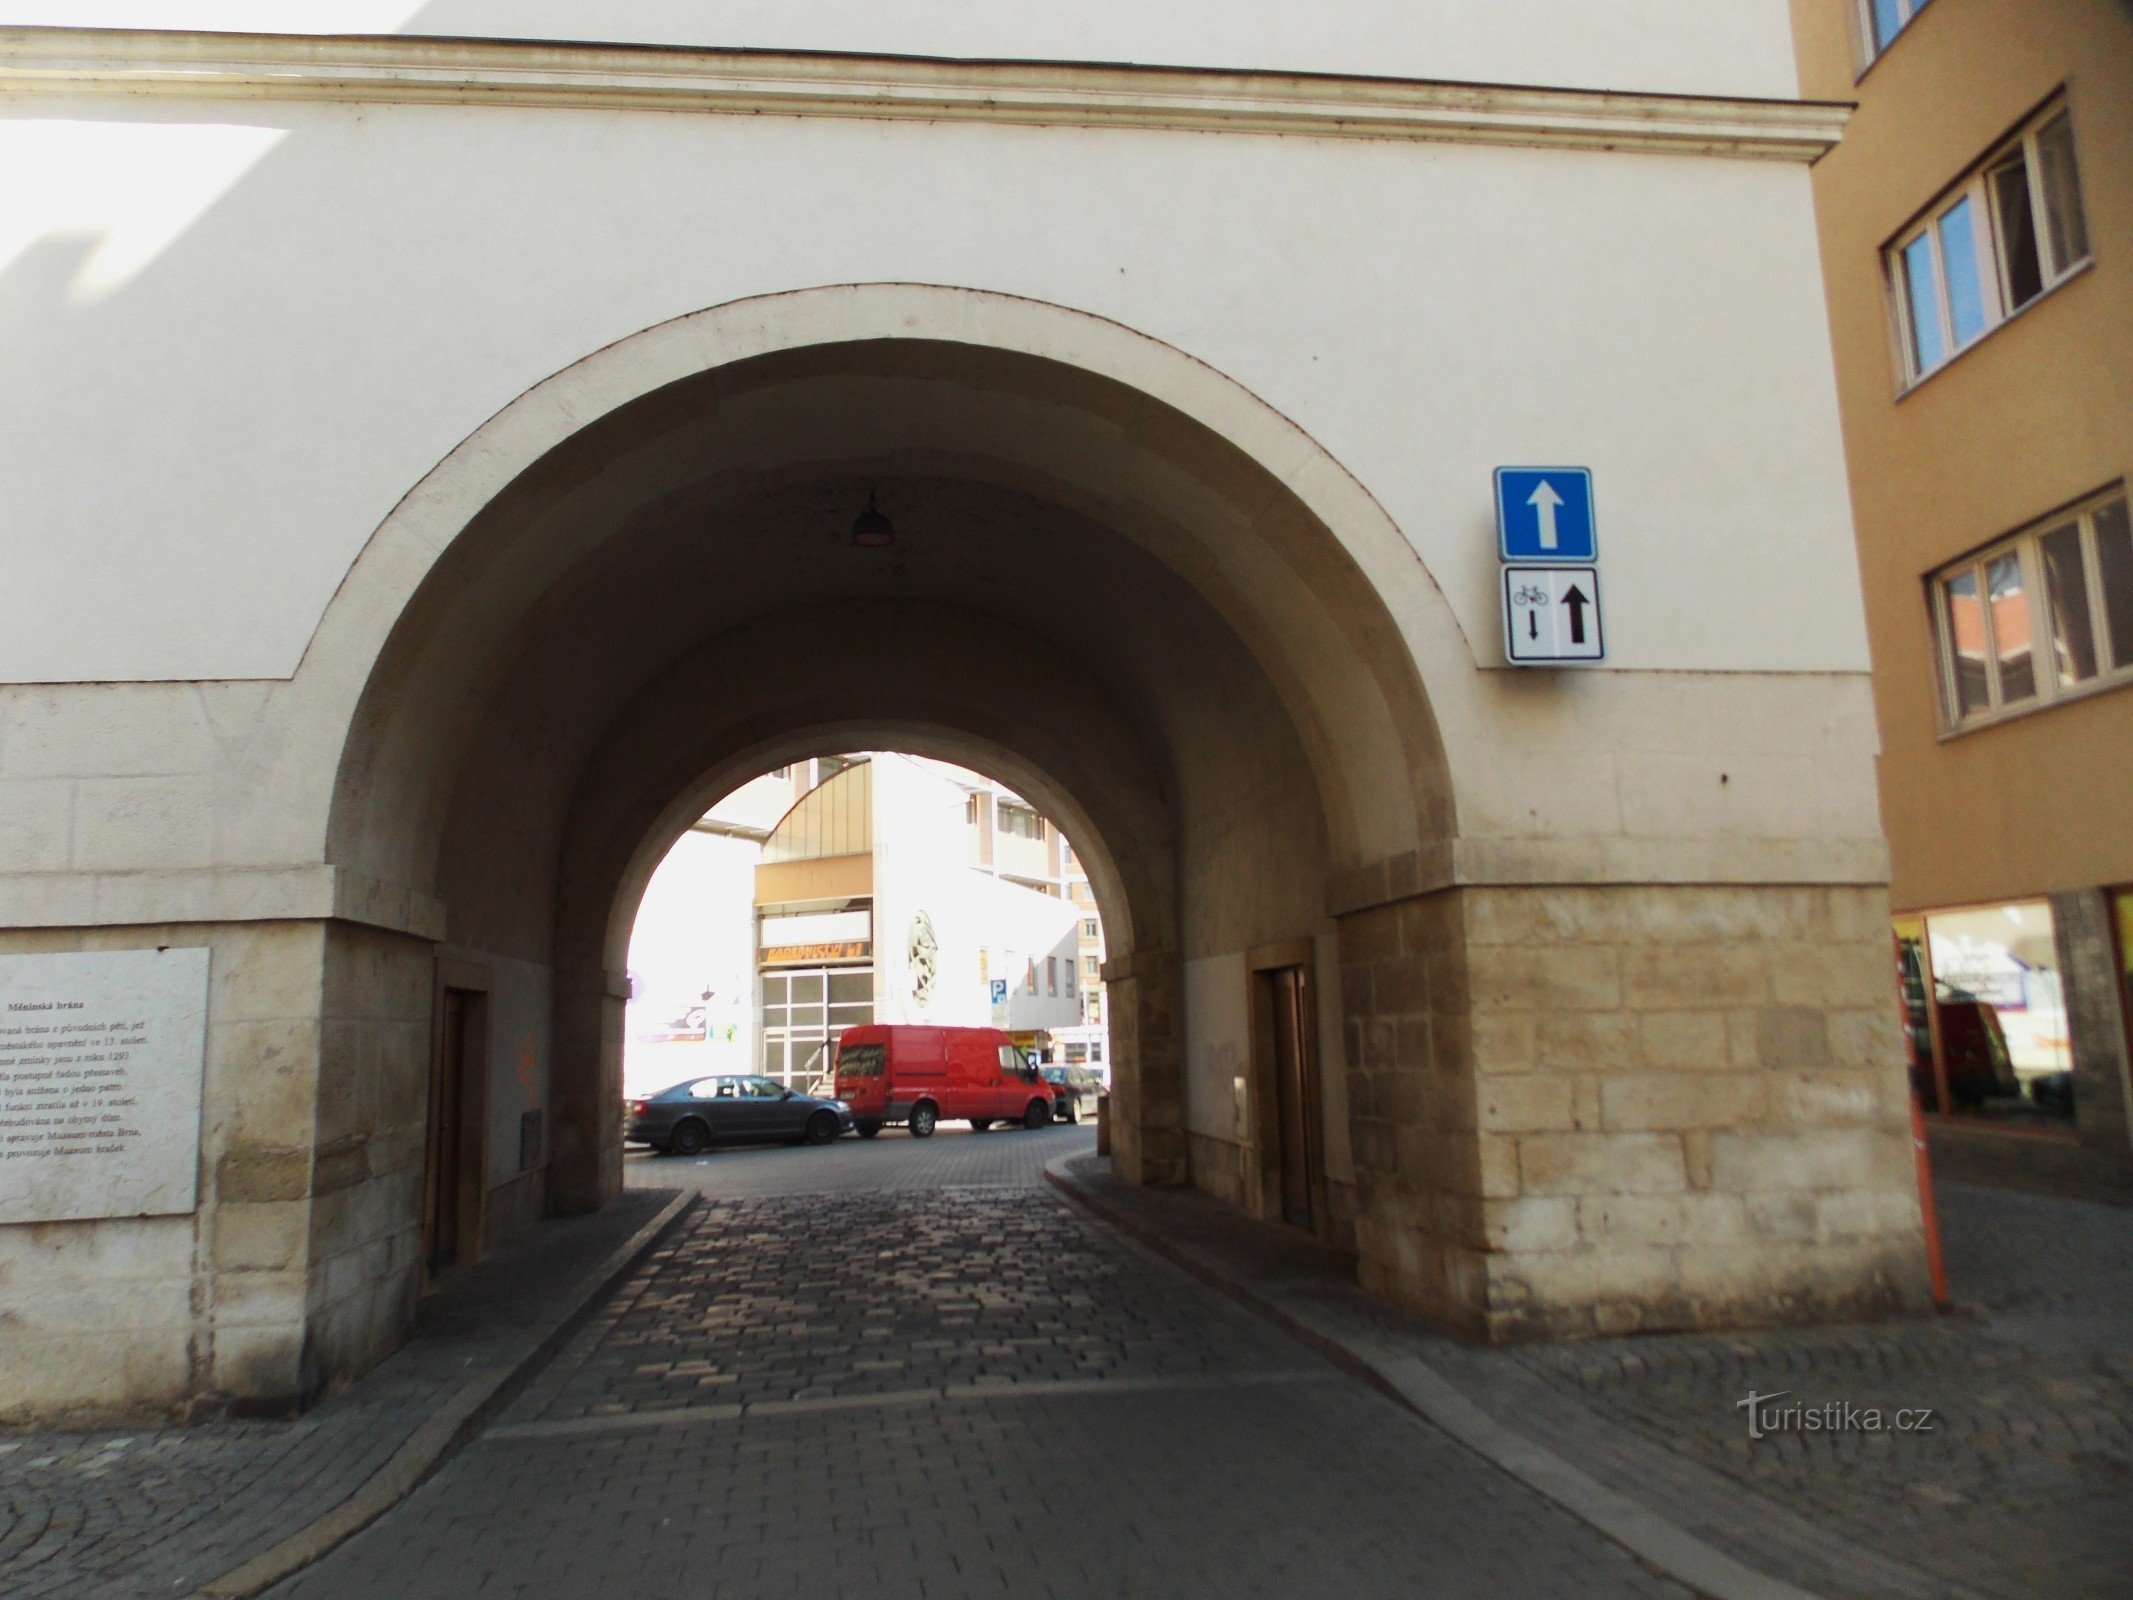 Puerta Měnín en el centro de Brno